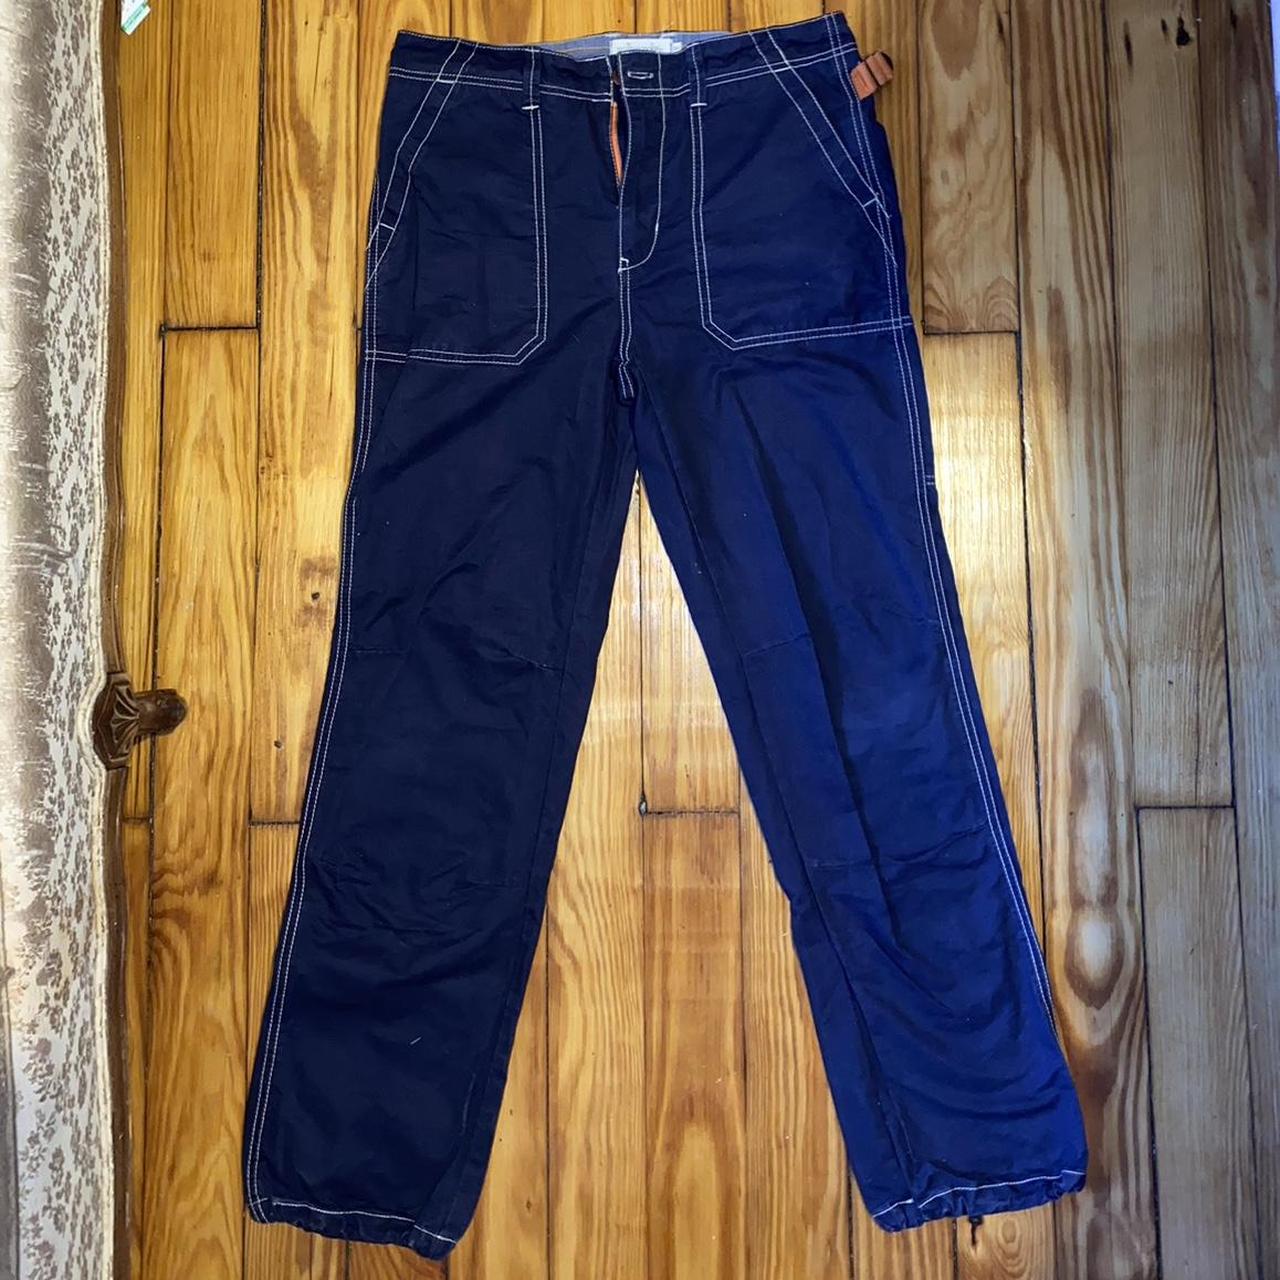 Vintage Jenny B good cargo pants, size 32 100%... - Depop